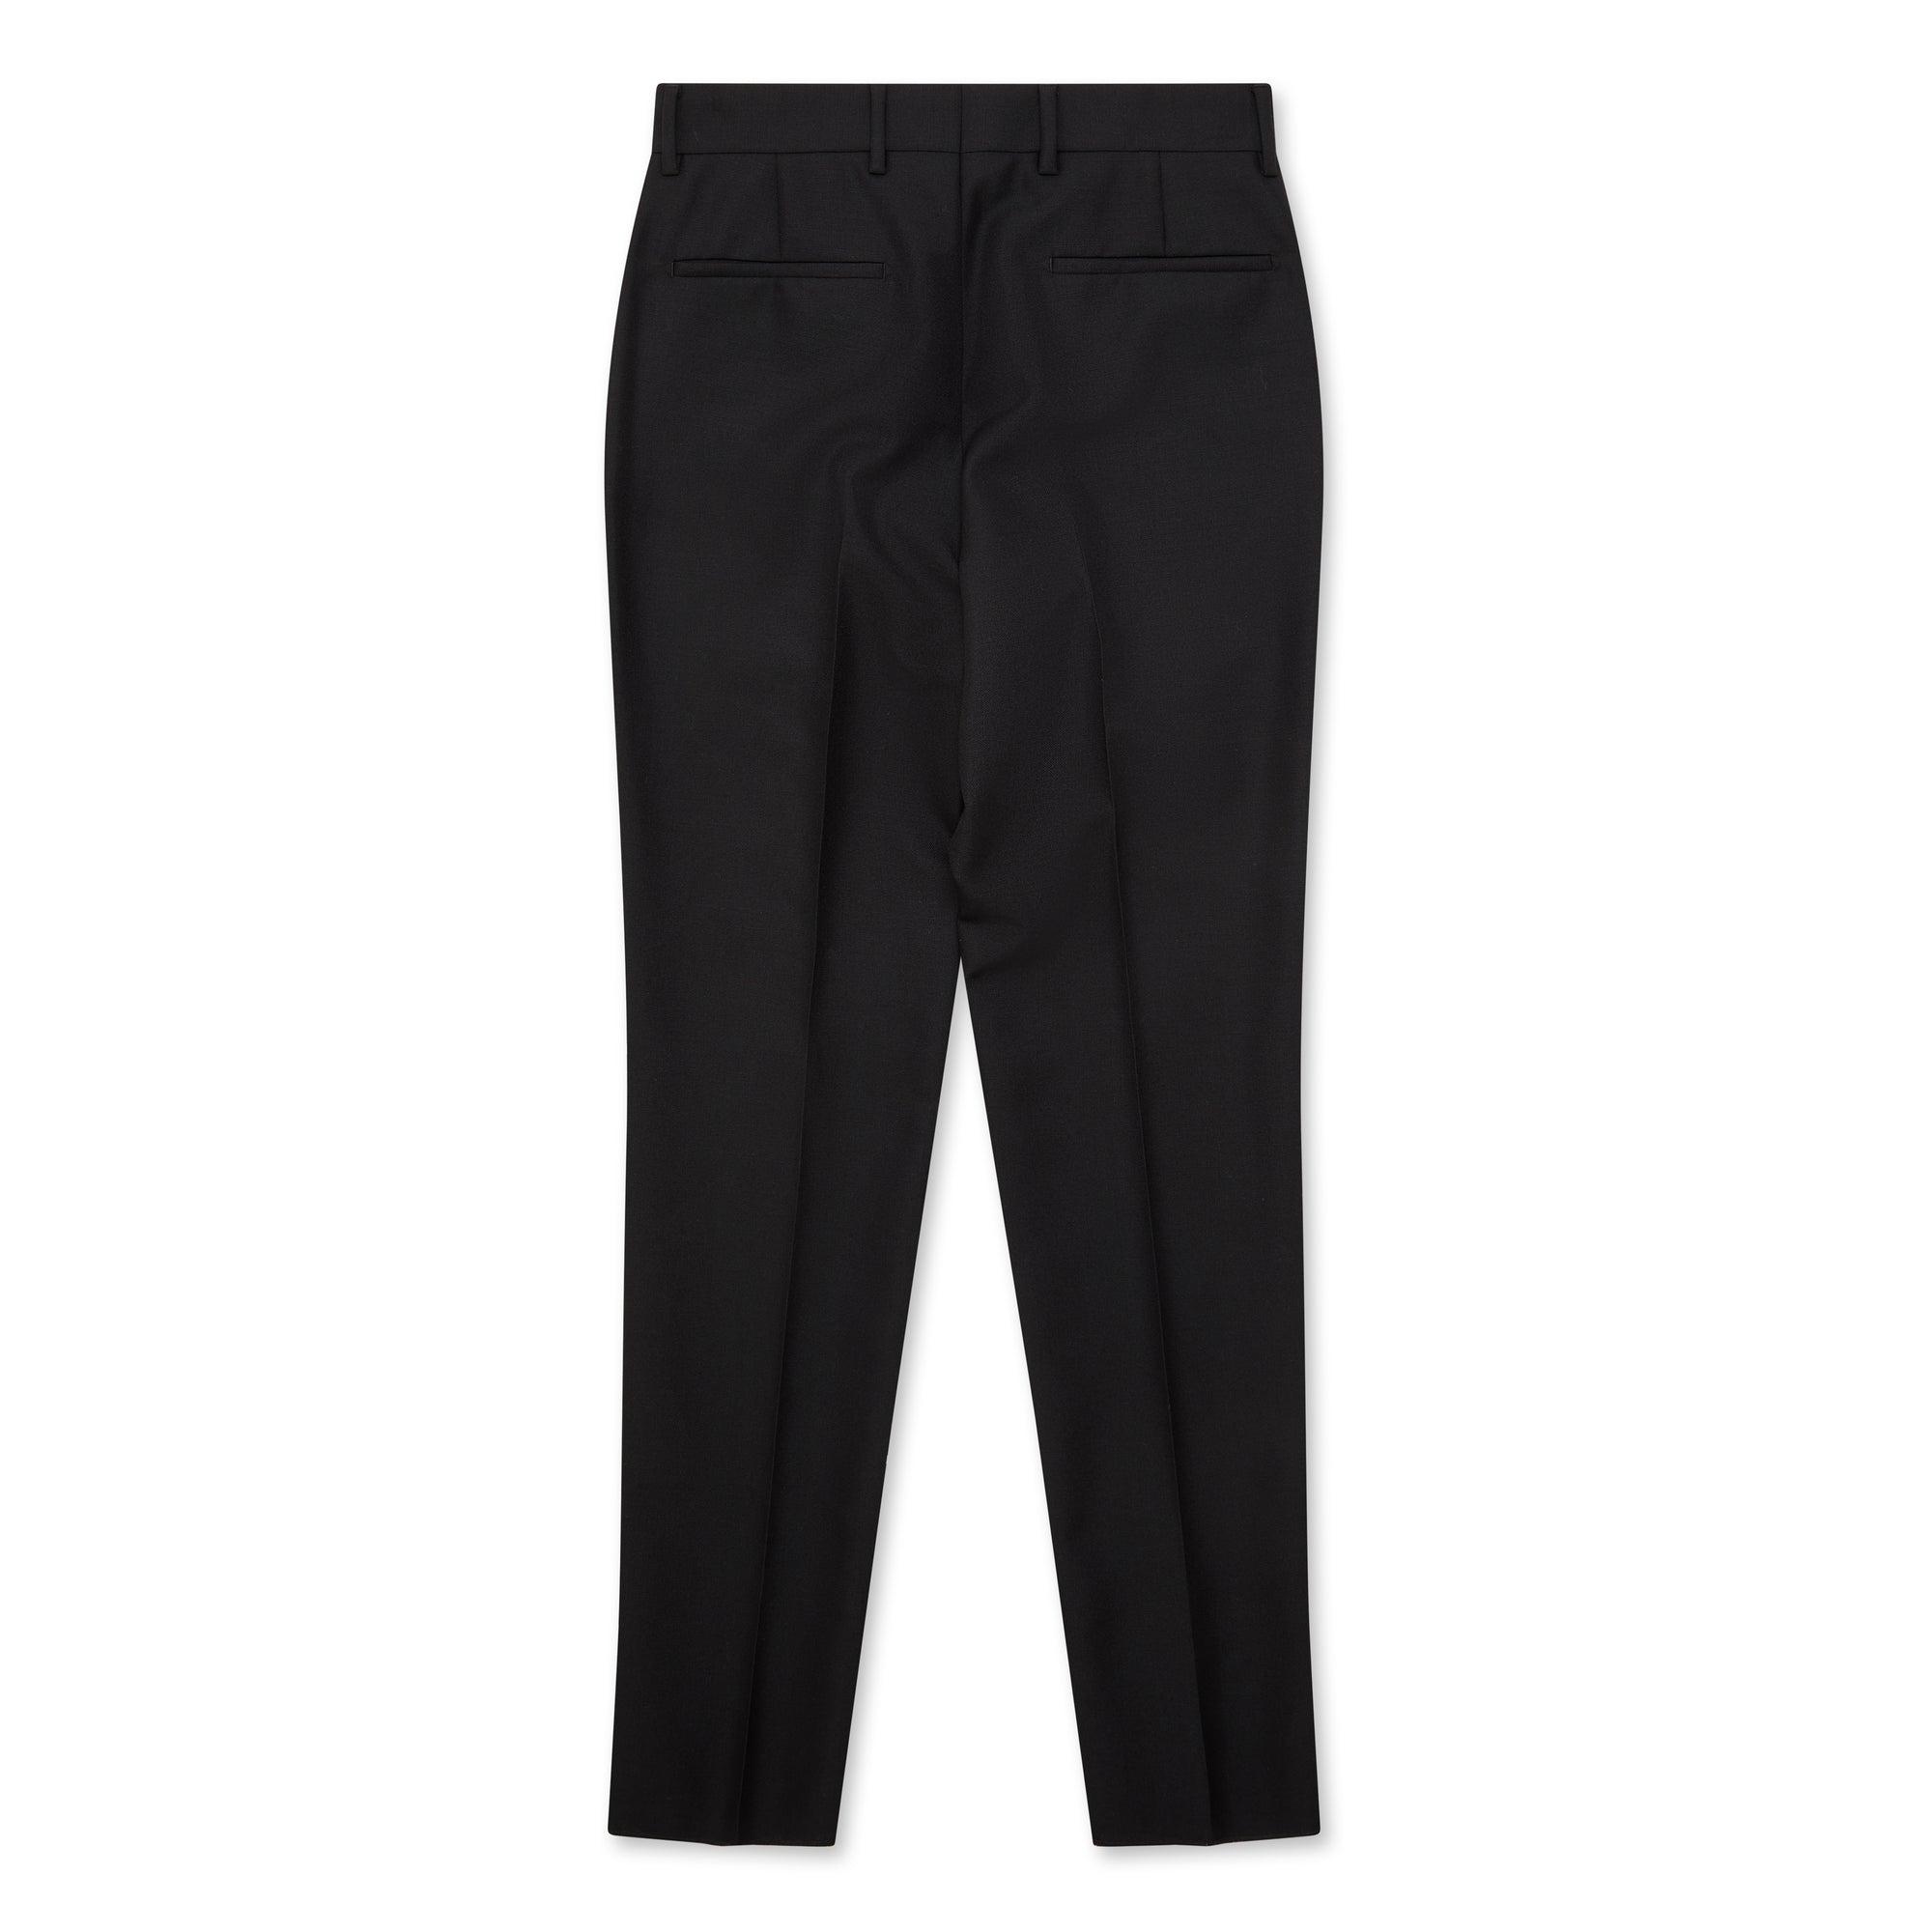 Prada - Men’s Wool and Mohair Pants - (Black) view 2